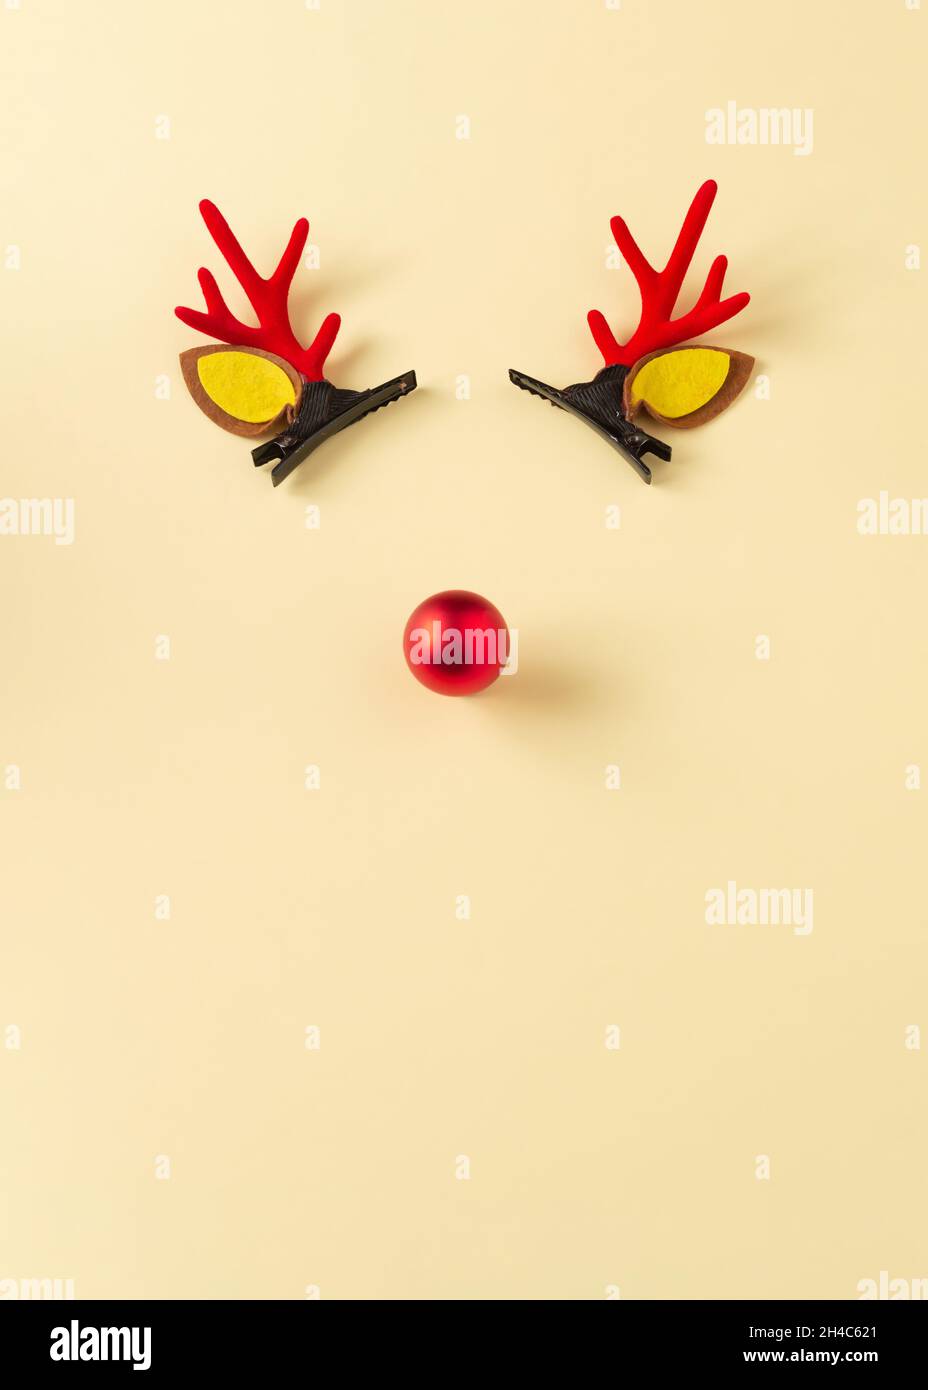 Cornes de renne avec un nez rouge sur fond jaune.L'humeur du nouvel an.Espace libre pour les messages d'accueil. Banque D'Images